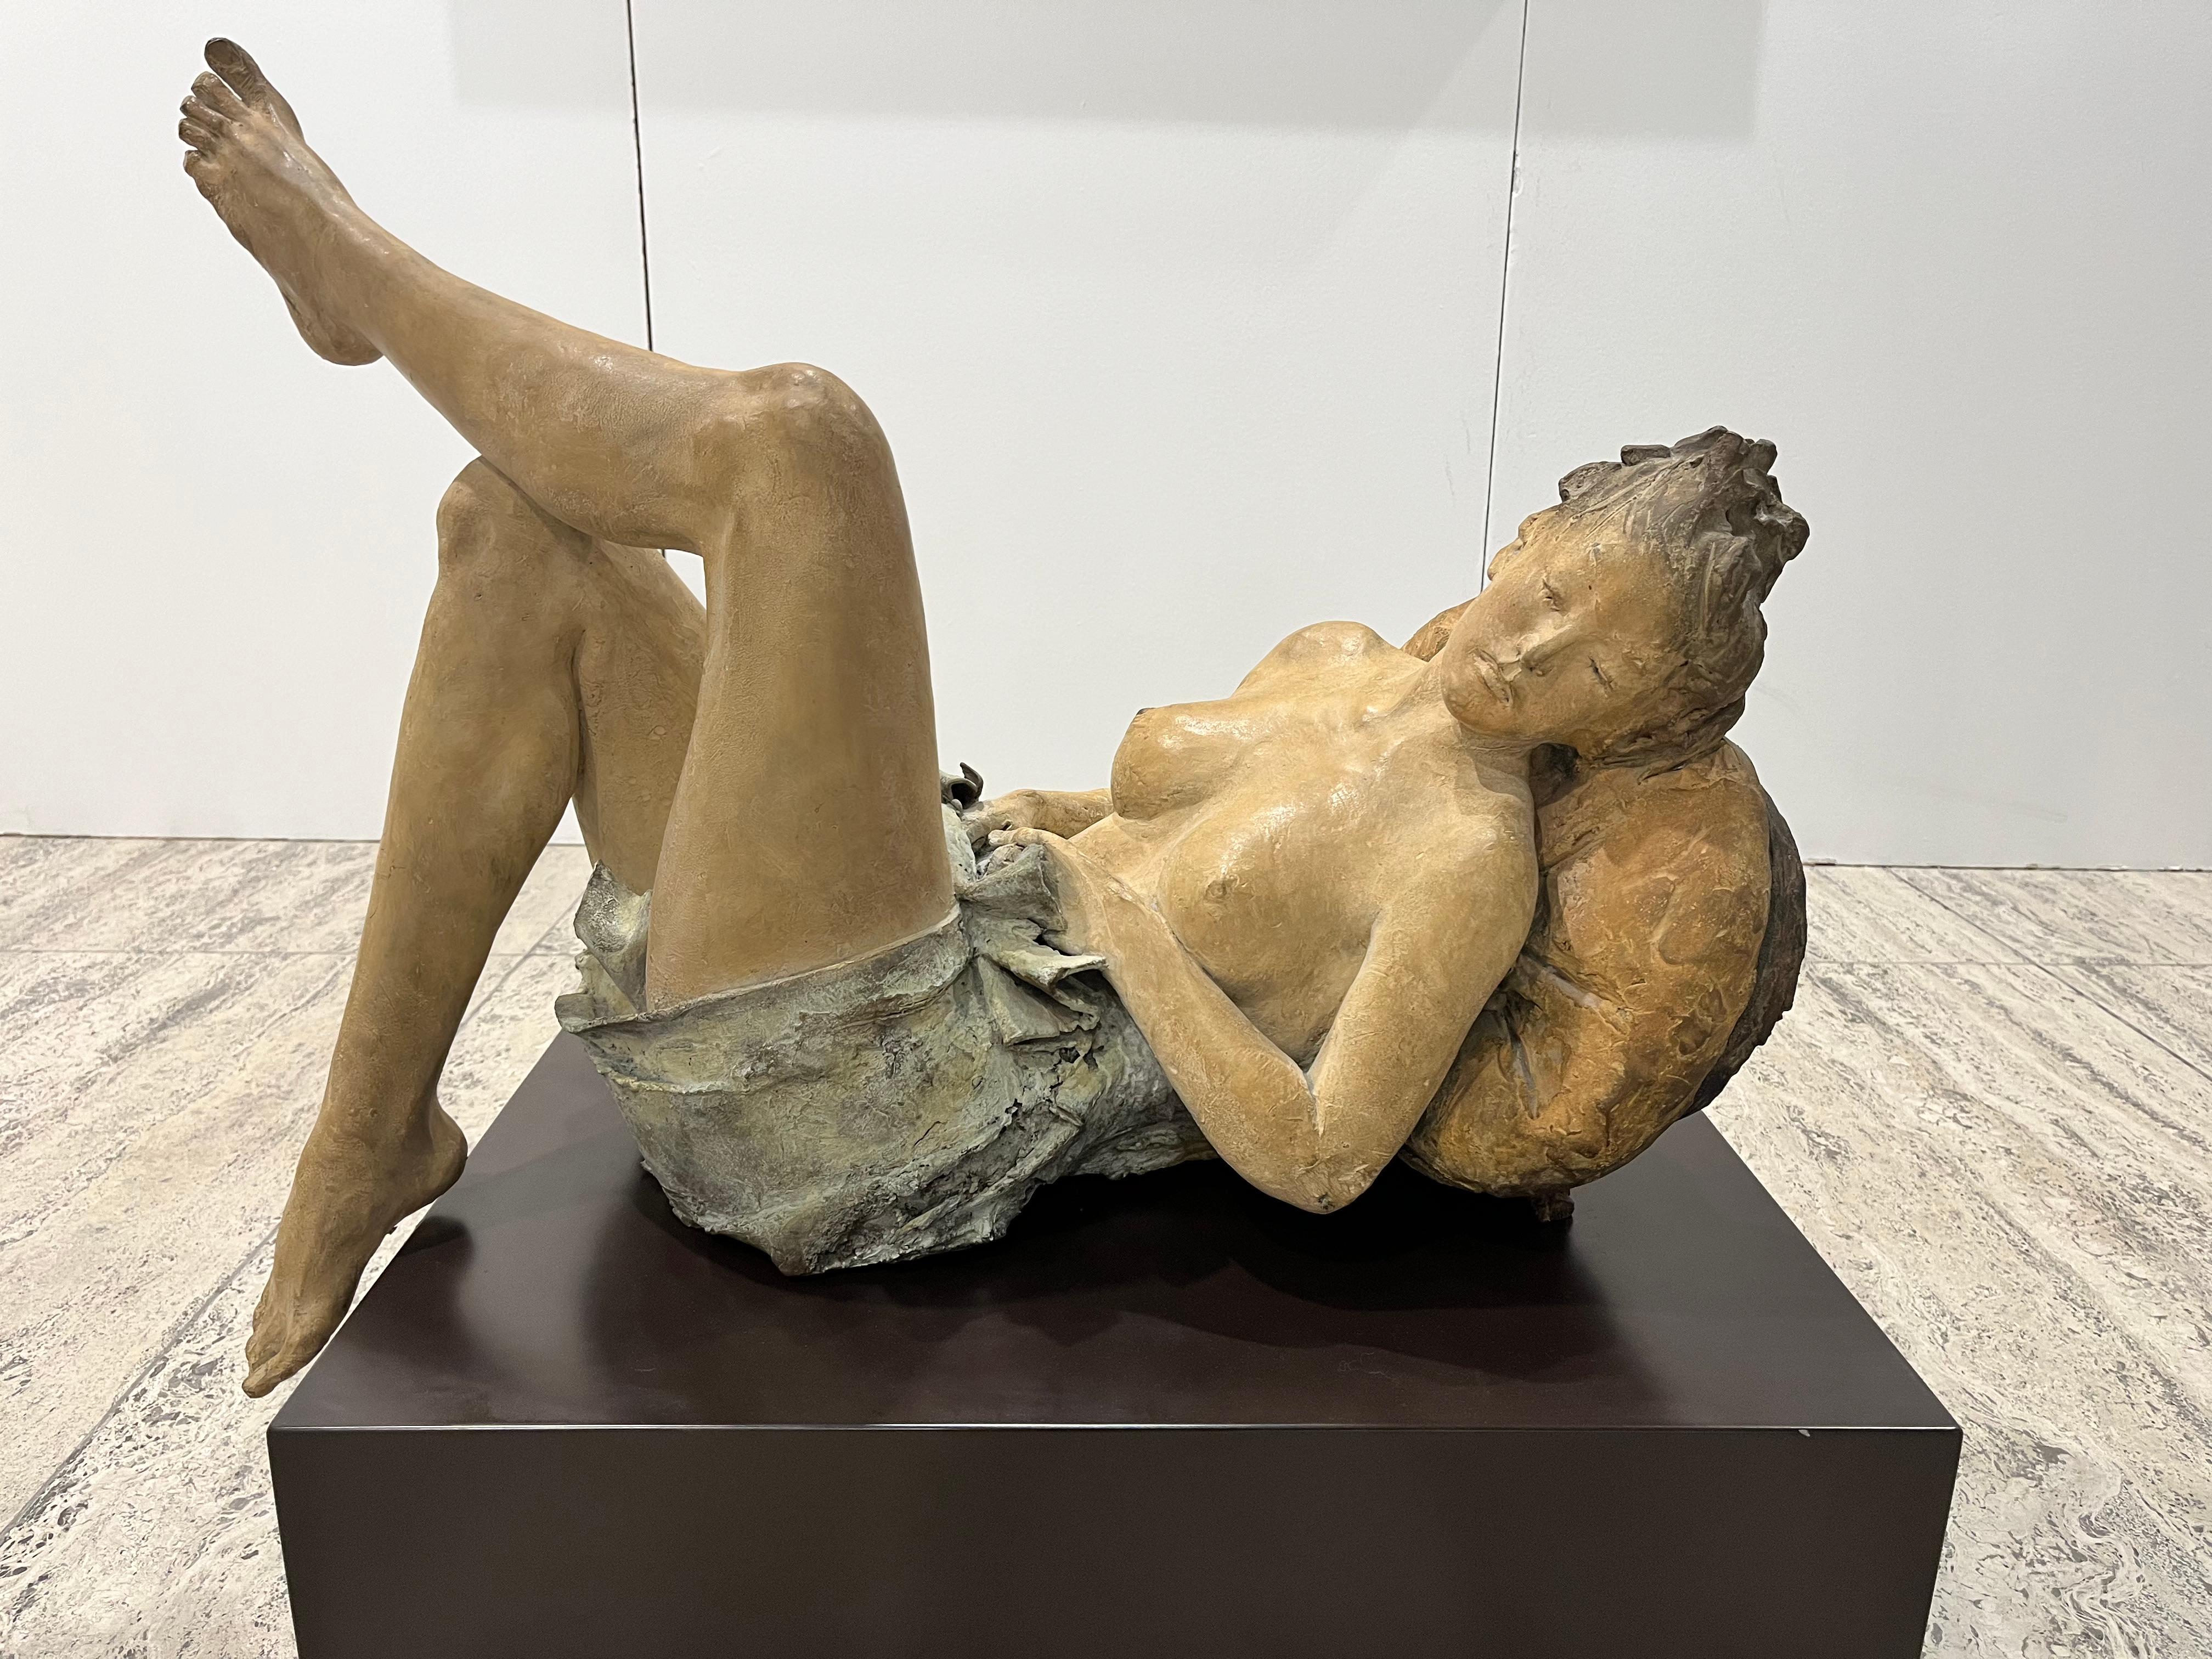 Ugo Riva Nude Sculpture – Feine Schönheit weiblicher Akt Skulptur in Bronze, Patina Ocker und Azur, Staub blau